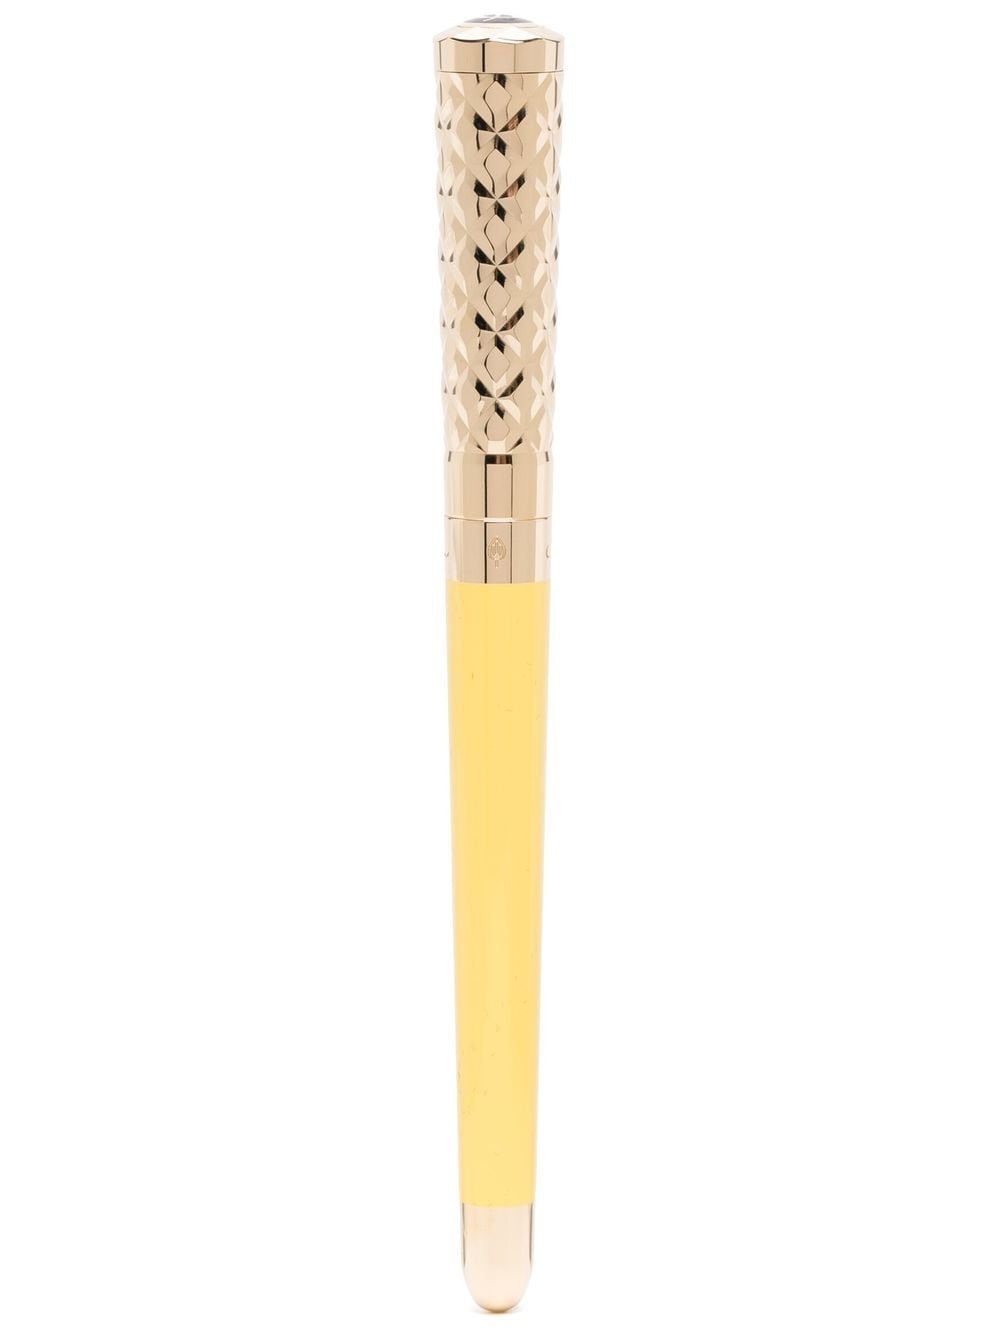 Image 2 of S.T. Dupont Liberté lacquer ballpoint pen